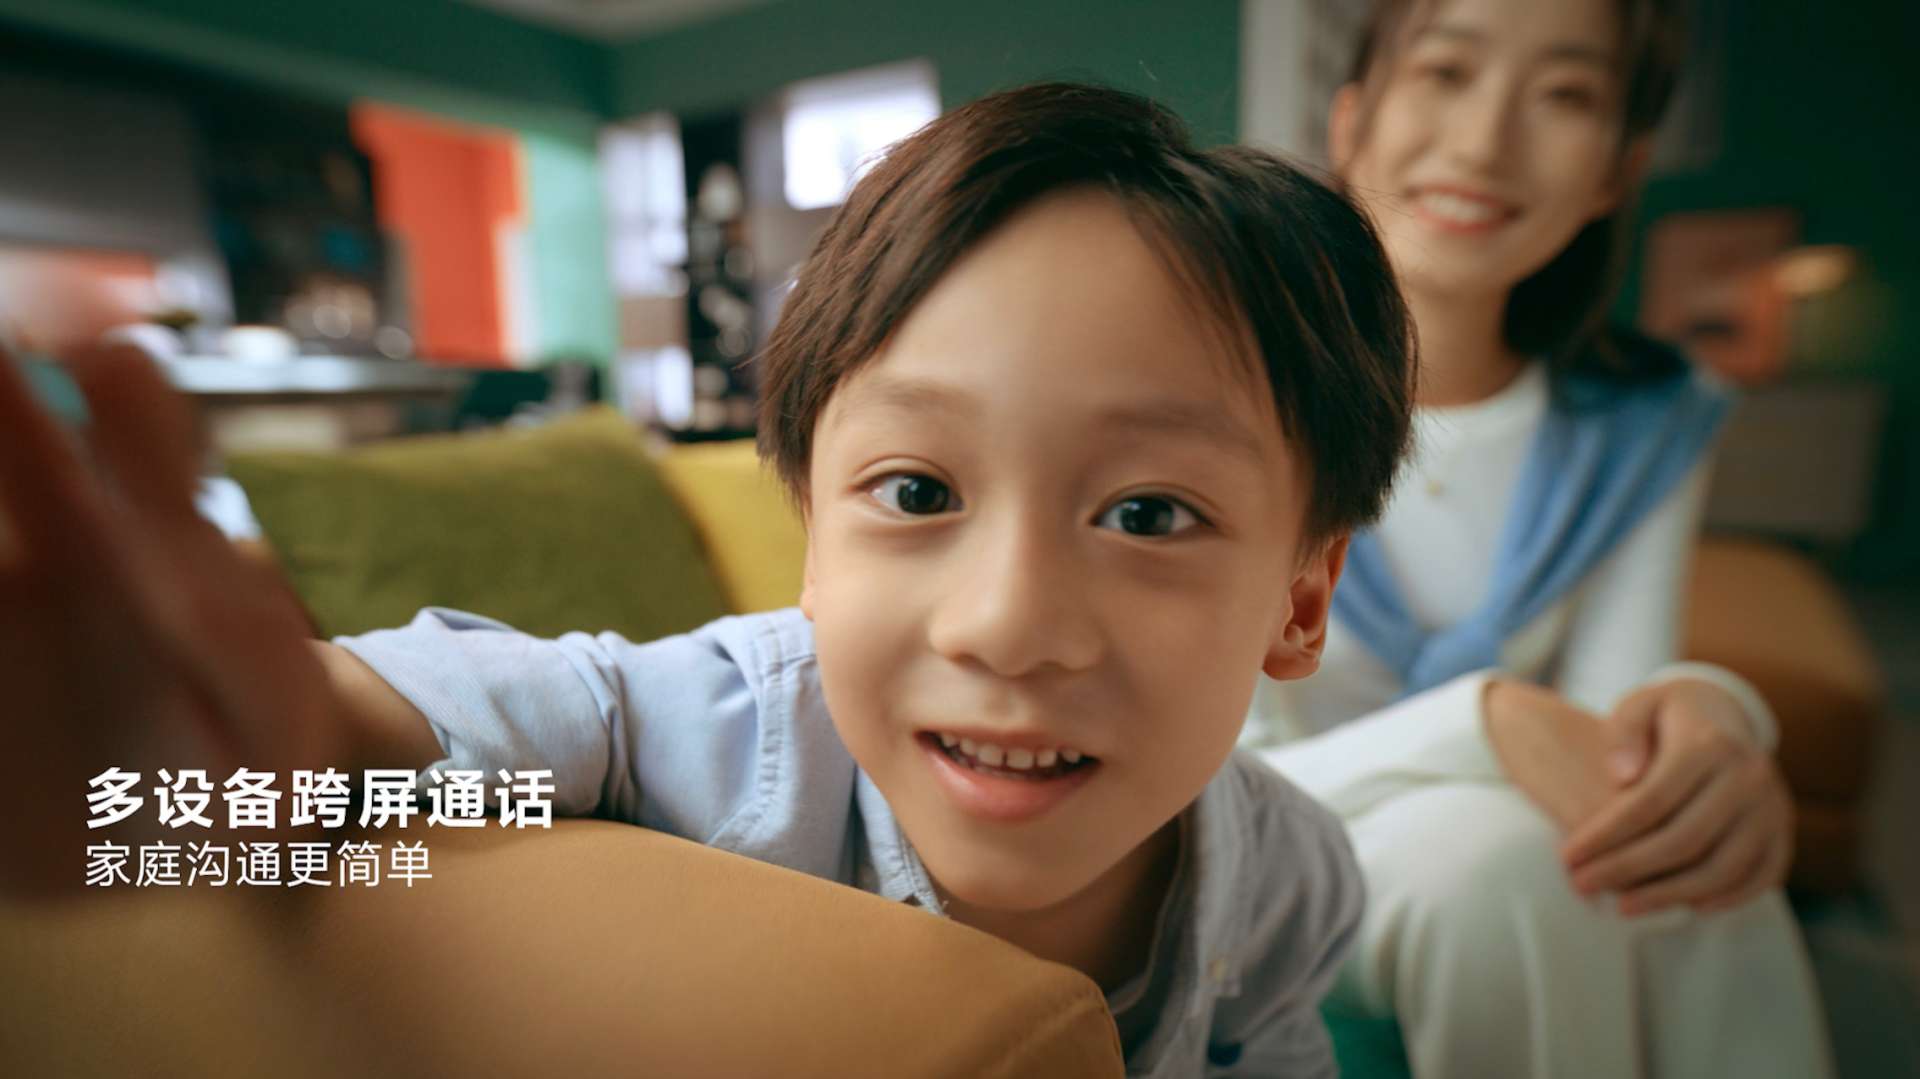 Xiaomi小米智能家庭屏产品片